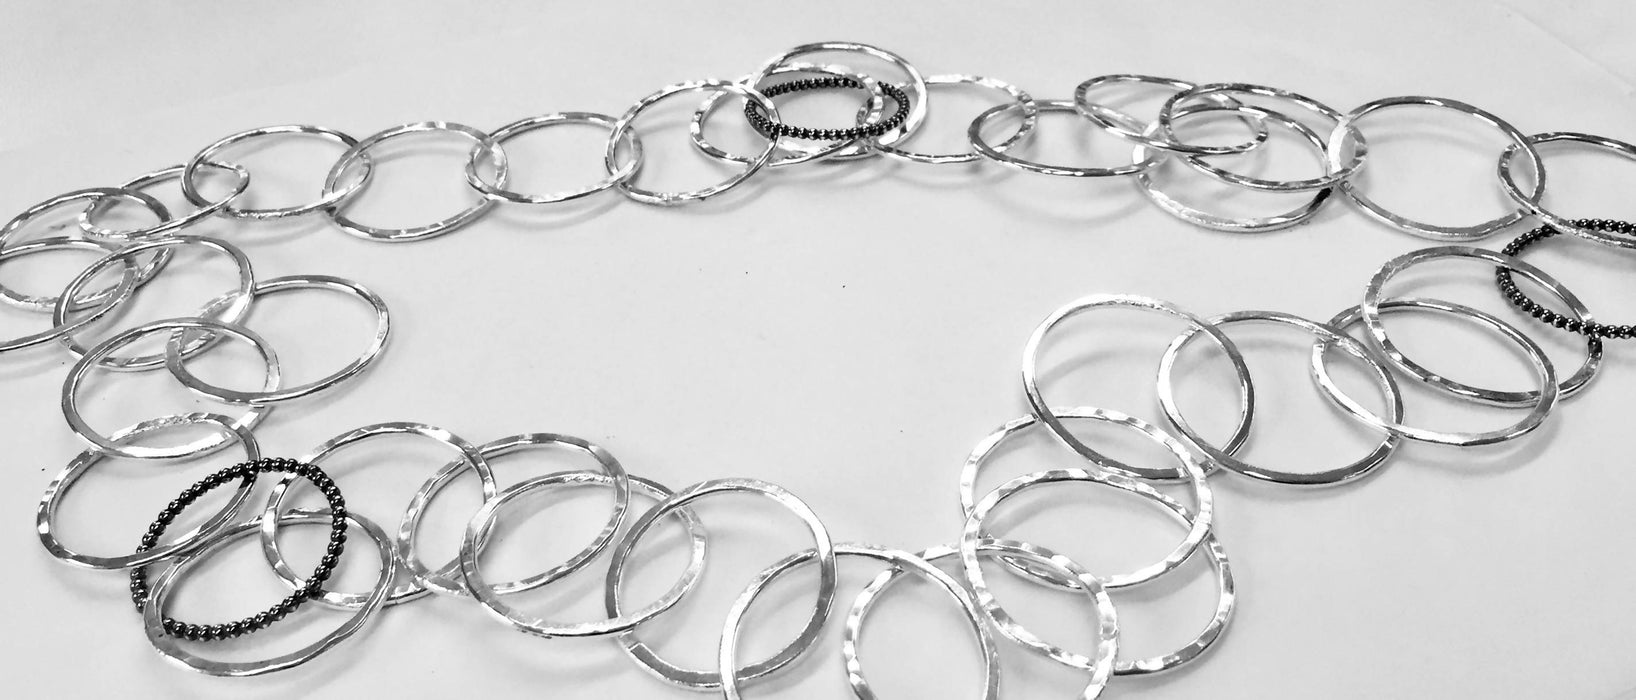 Long Silver 'Dimp' Chain Necklace